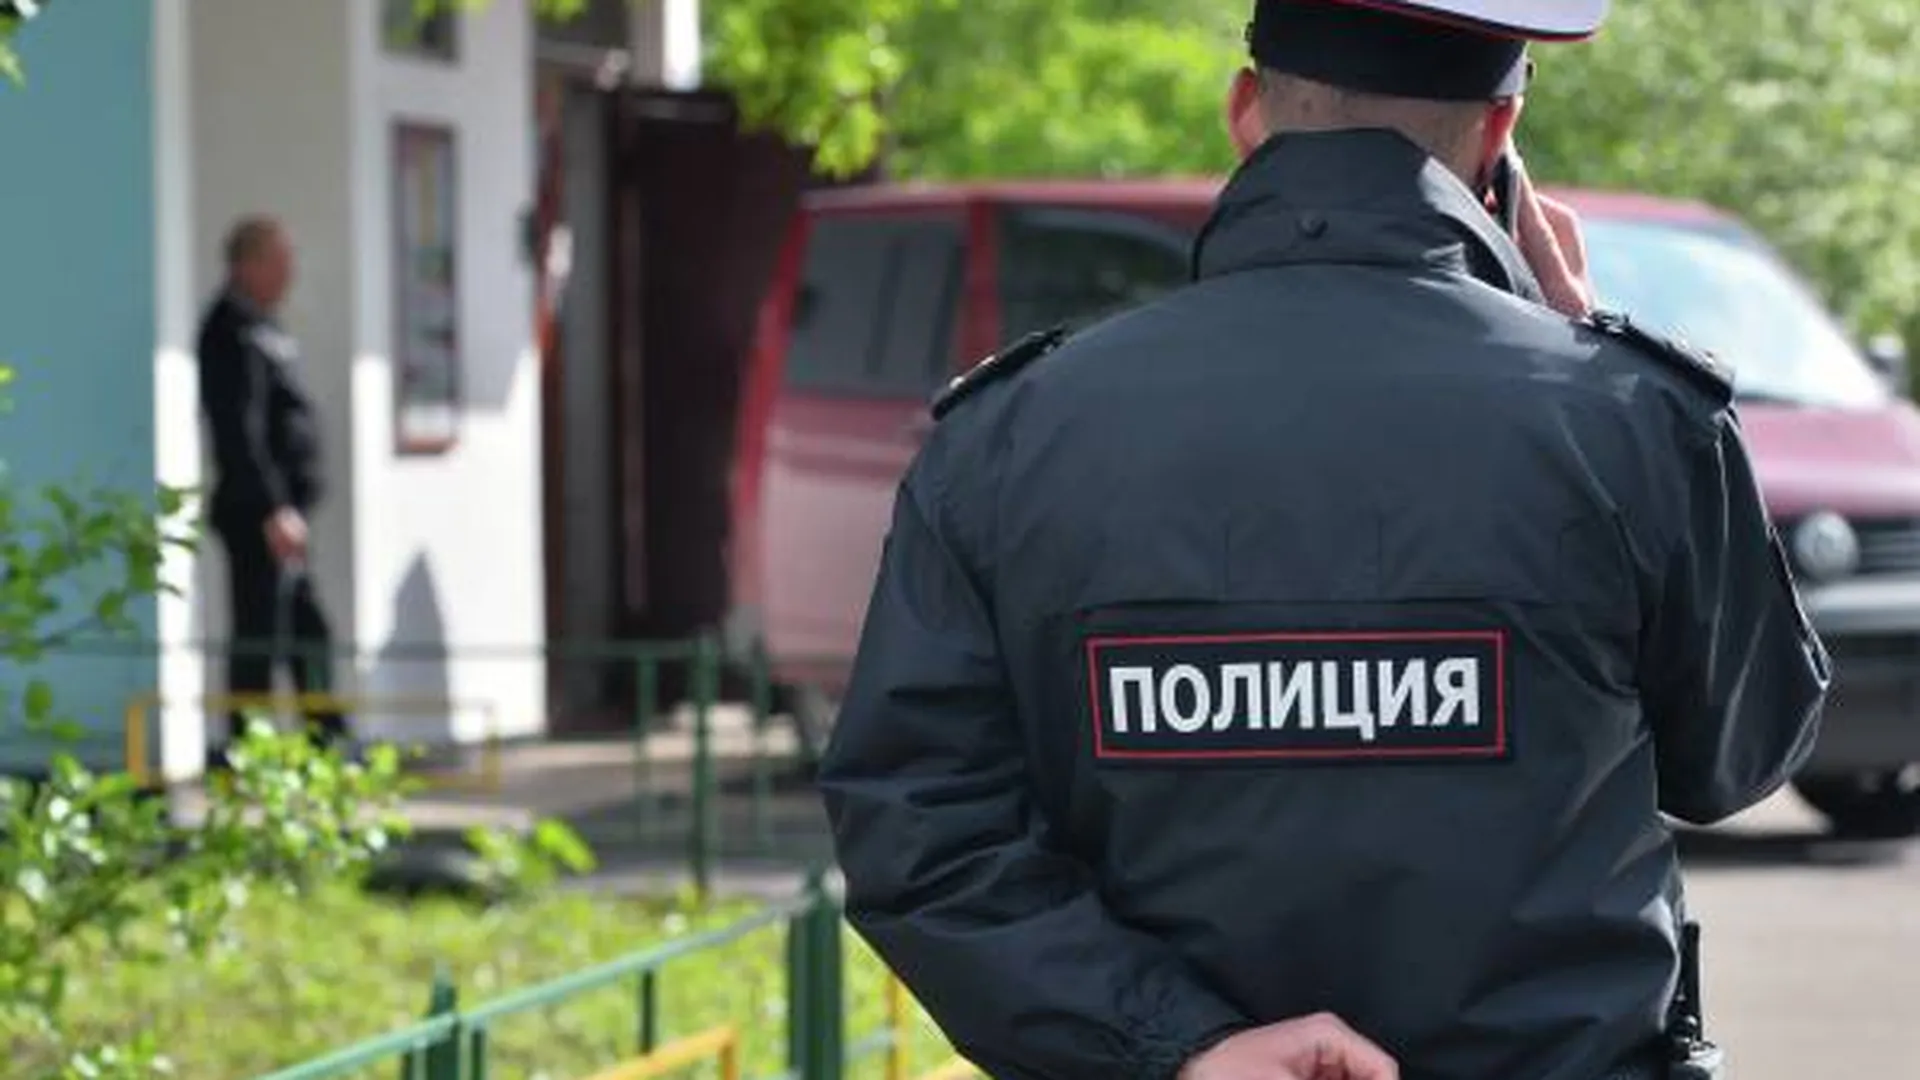 Парень и девушка насмерть отравились в квартире на западе Москвы — СМИ